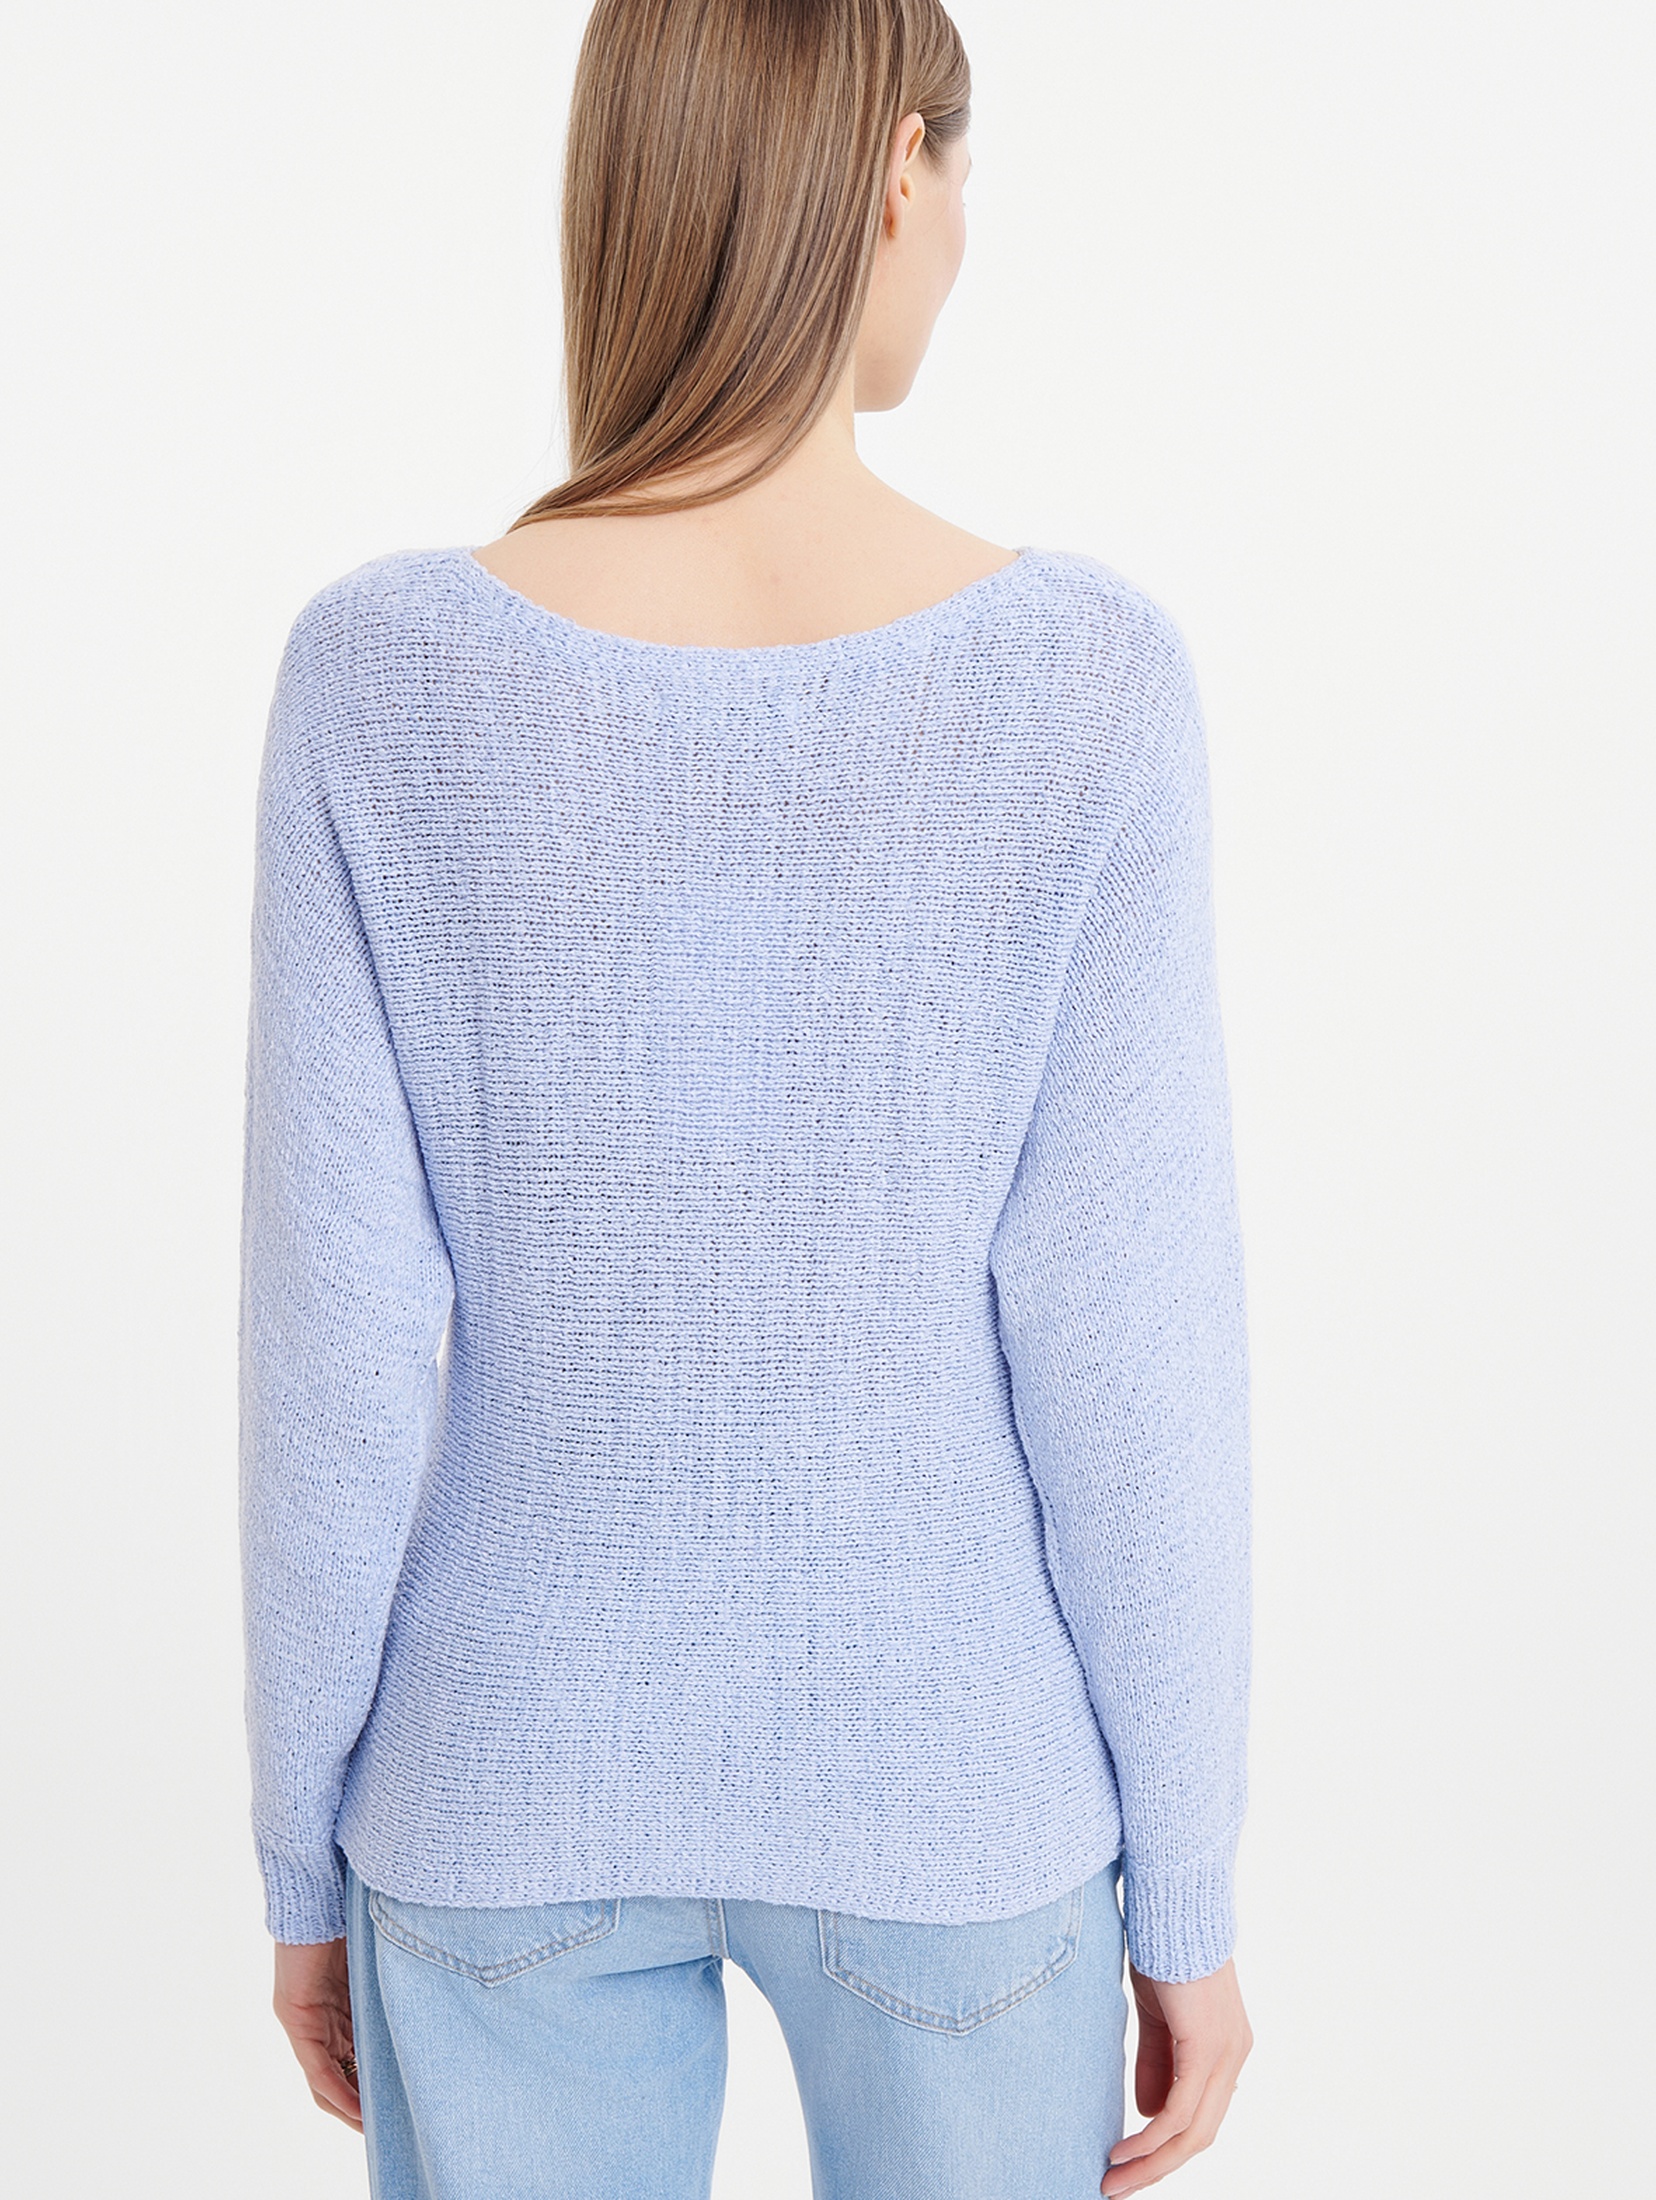 Sweter oversize niebieski z surowa strukturą niebieski